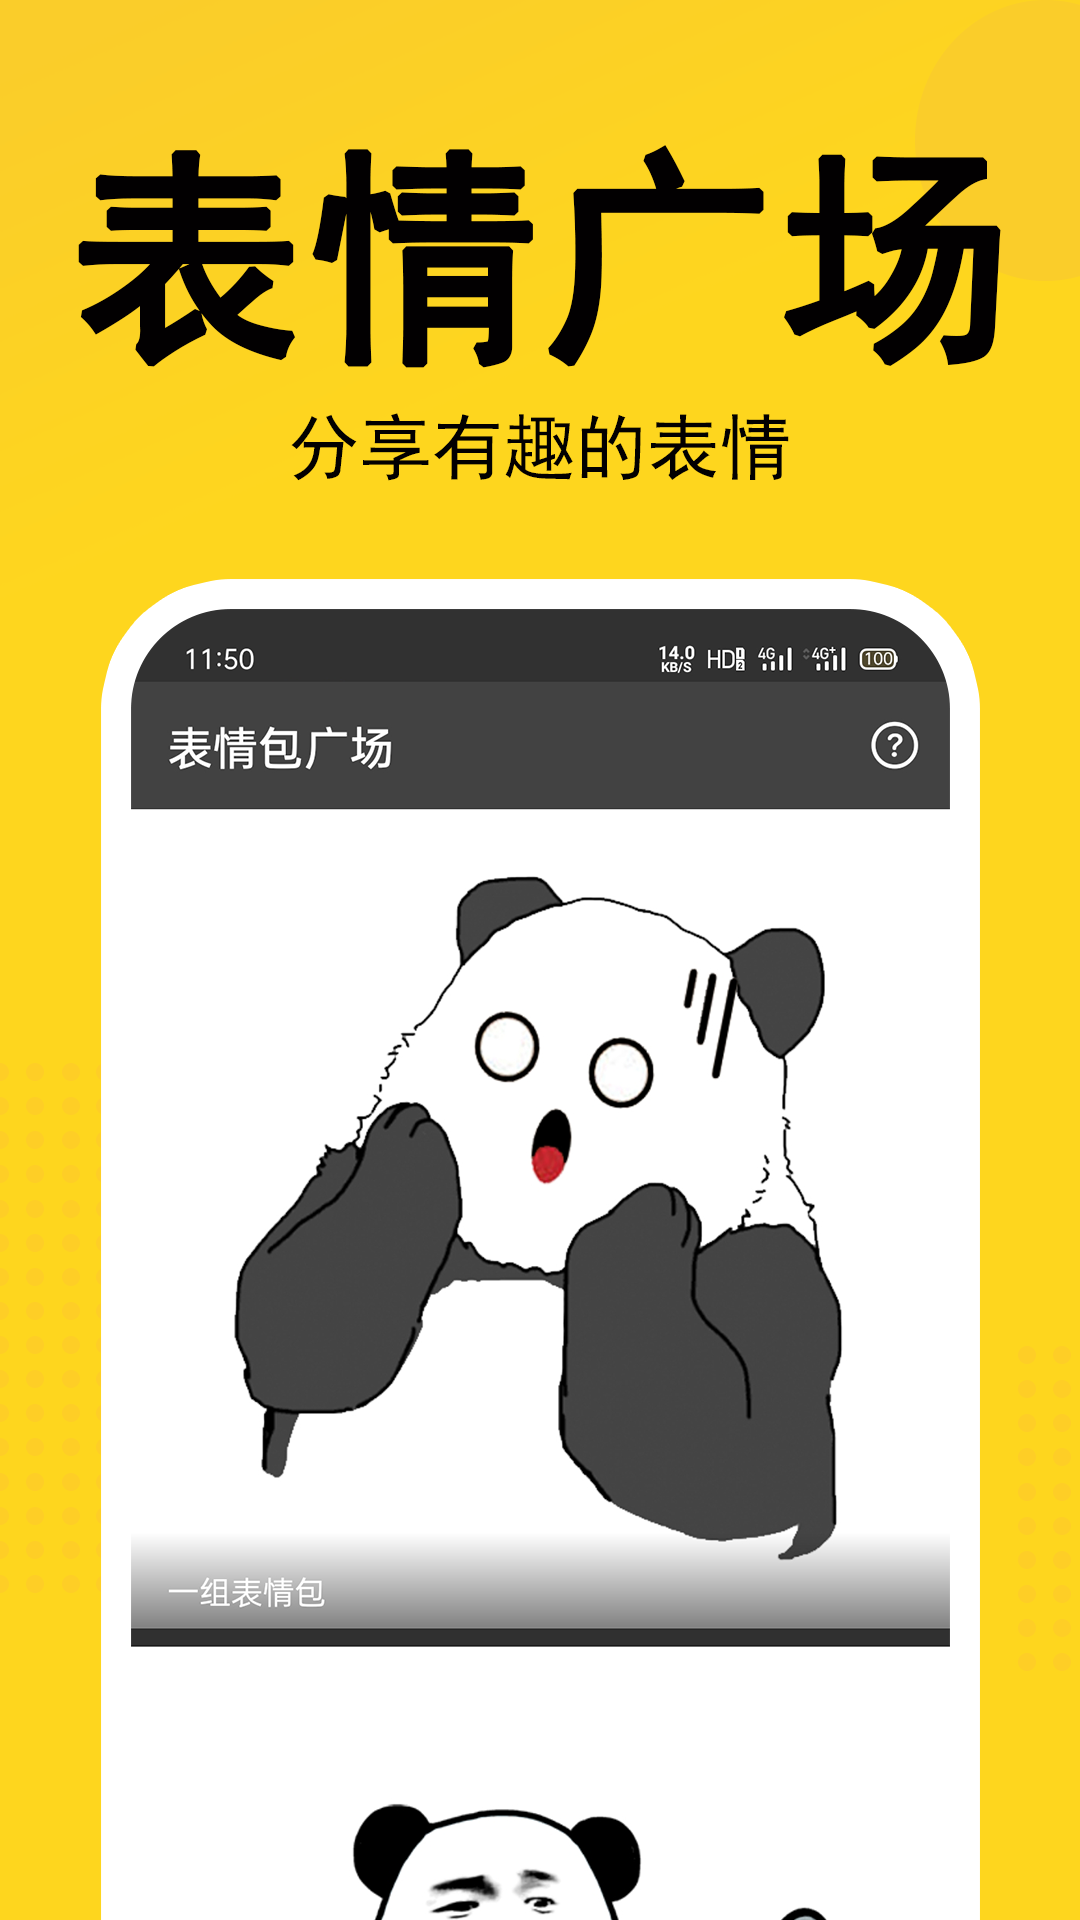 熊猫表情包截图(2)